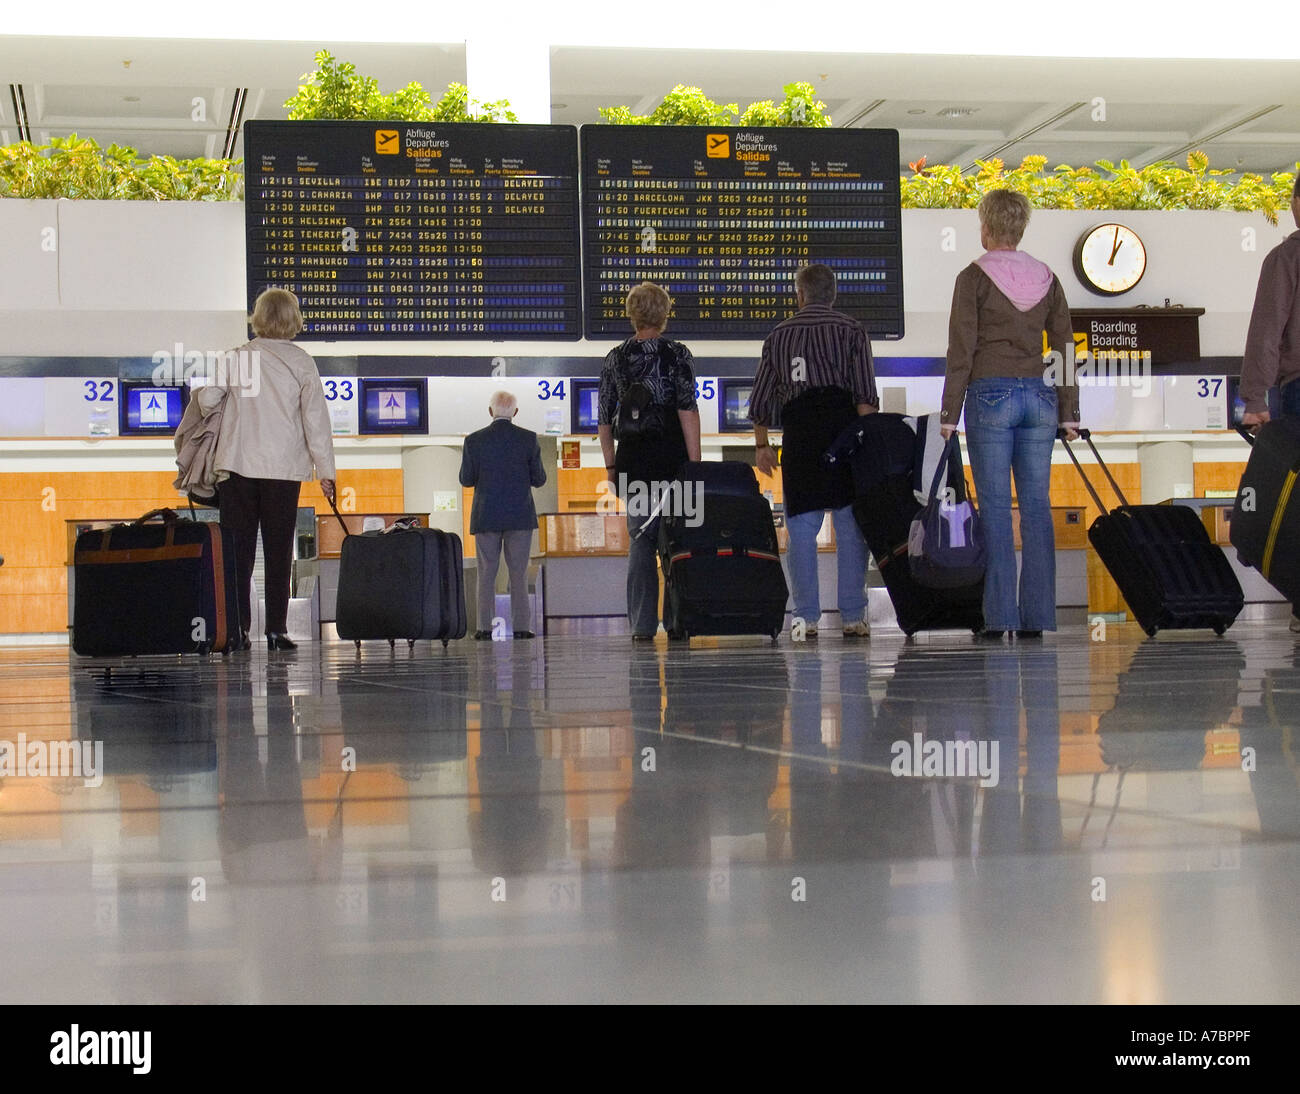 ABFLUGPASSAGIERE Flughafenpassagiere waren auf der modernen Konkurshalle sozial distanziert und schauten sich die Informationsbildschirme zu den Abflugzeiten im Flughafenterminal an Stockfoto